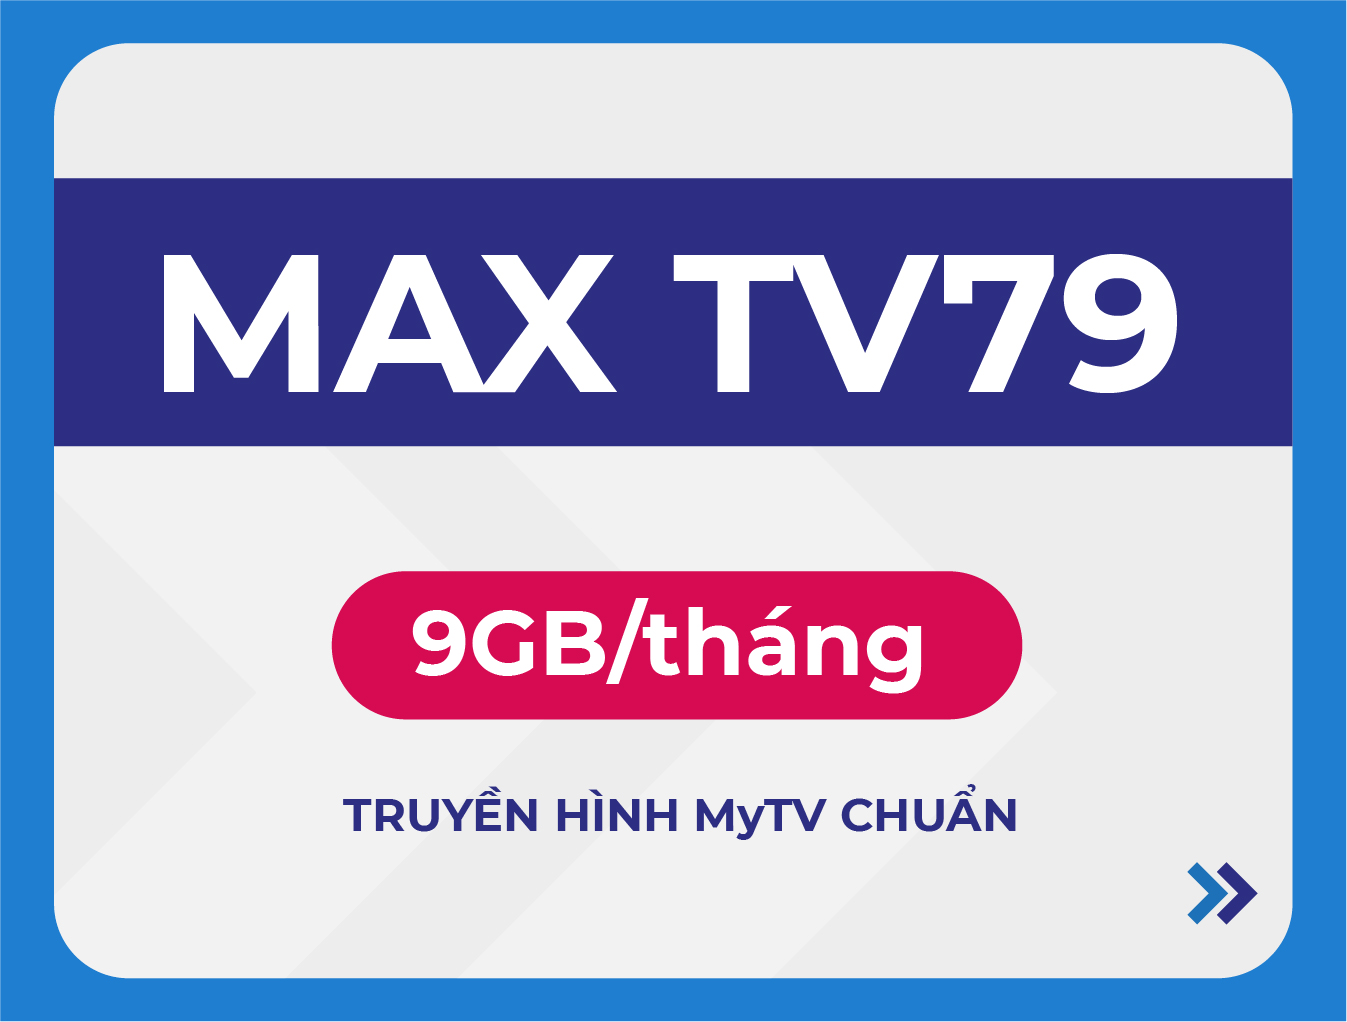 MAX TV79